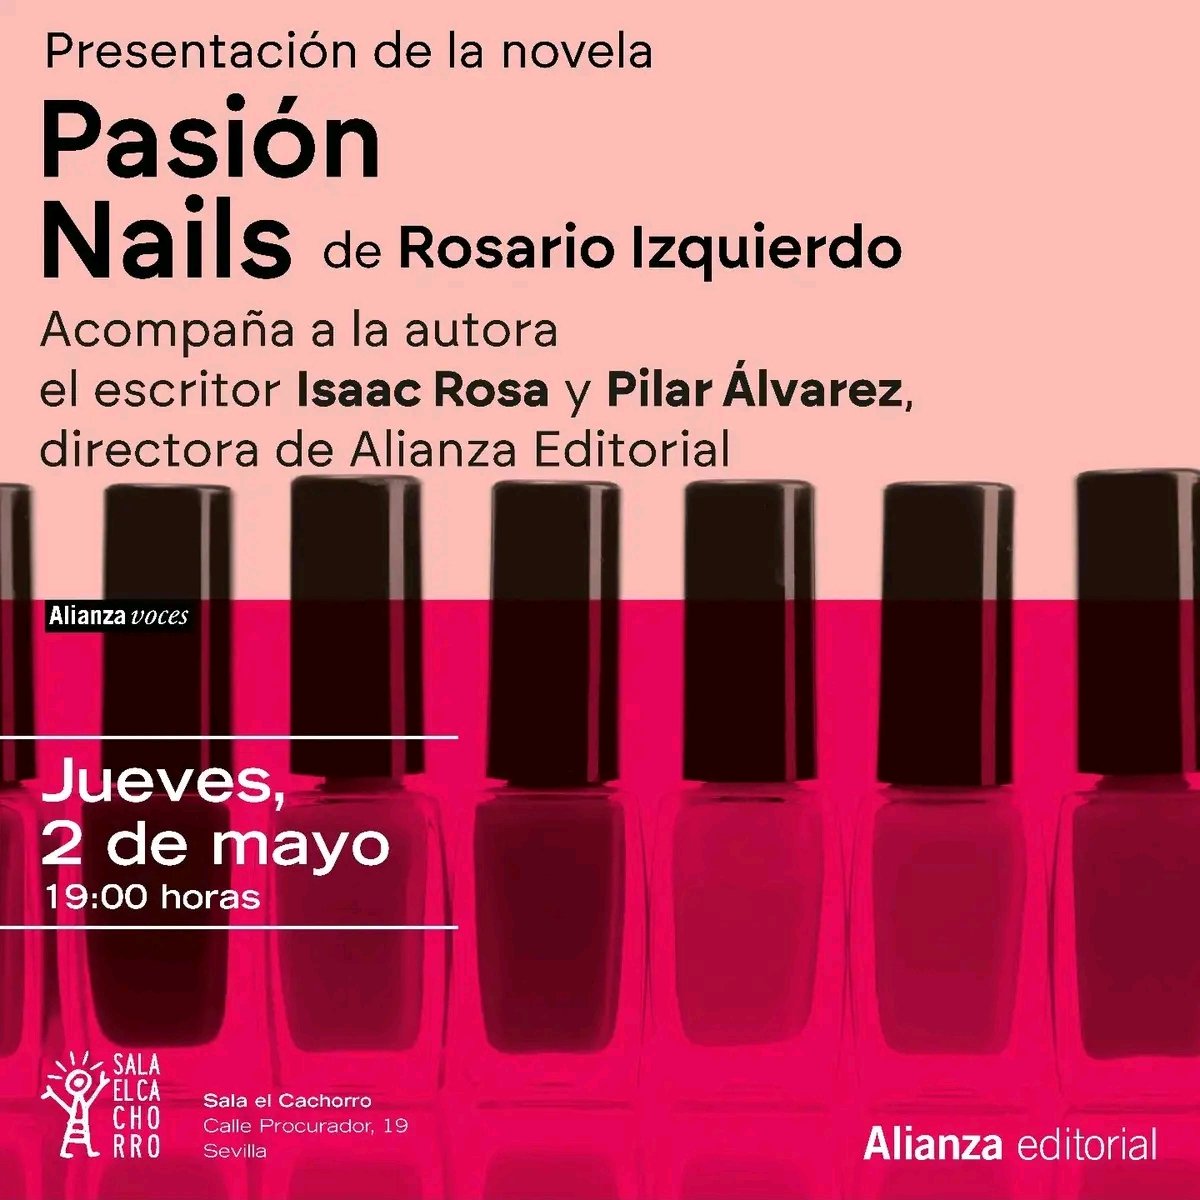 El 2 de mayo estaremos en la mejor compañía, con @_isaacrosa y Pilar Álvarez, hablando de Pasión Nails. Será en la Sala El Cachorro #sevilla #triana Os esperamos... 💅 #pasiónnails #novela #alianzavoces